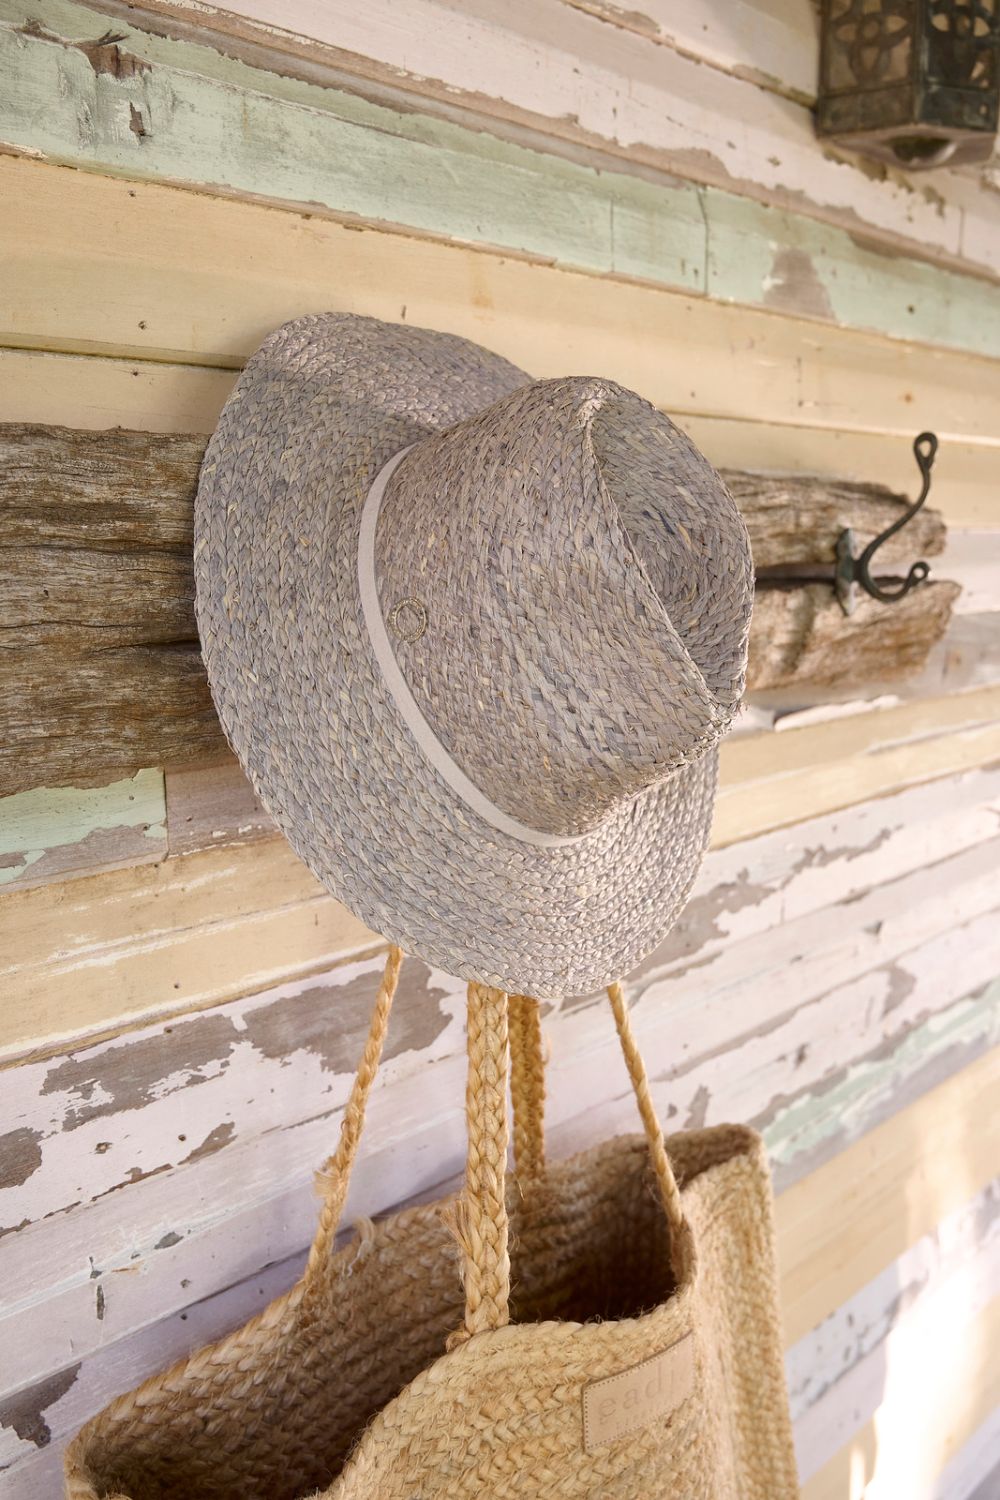 Sundaise Panama Hat - Soft grey - Eadie Lifestyle